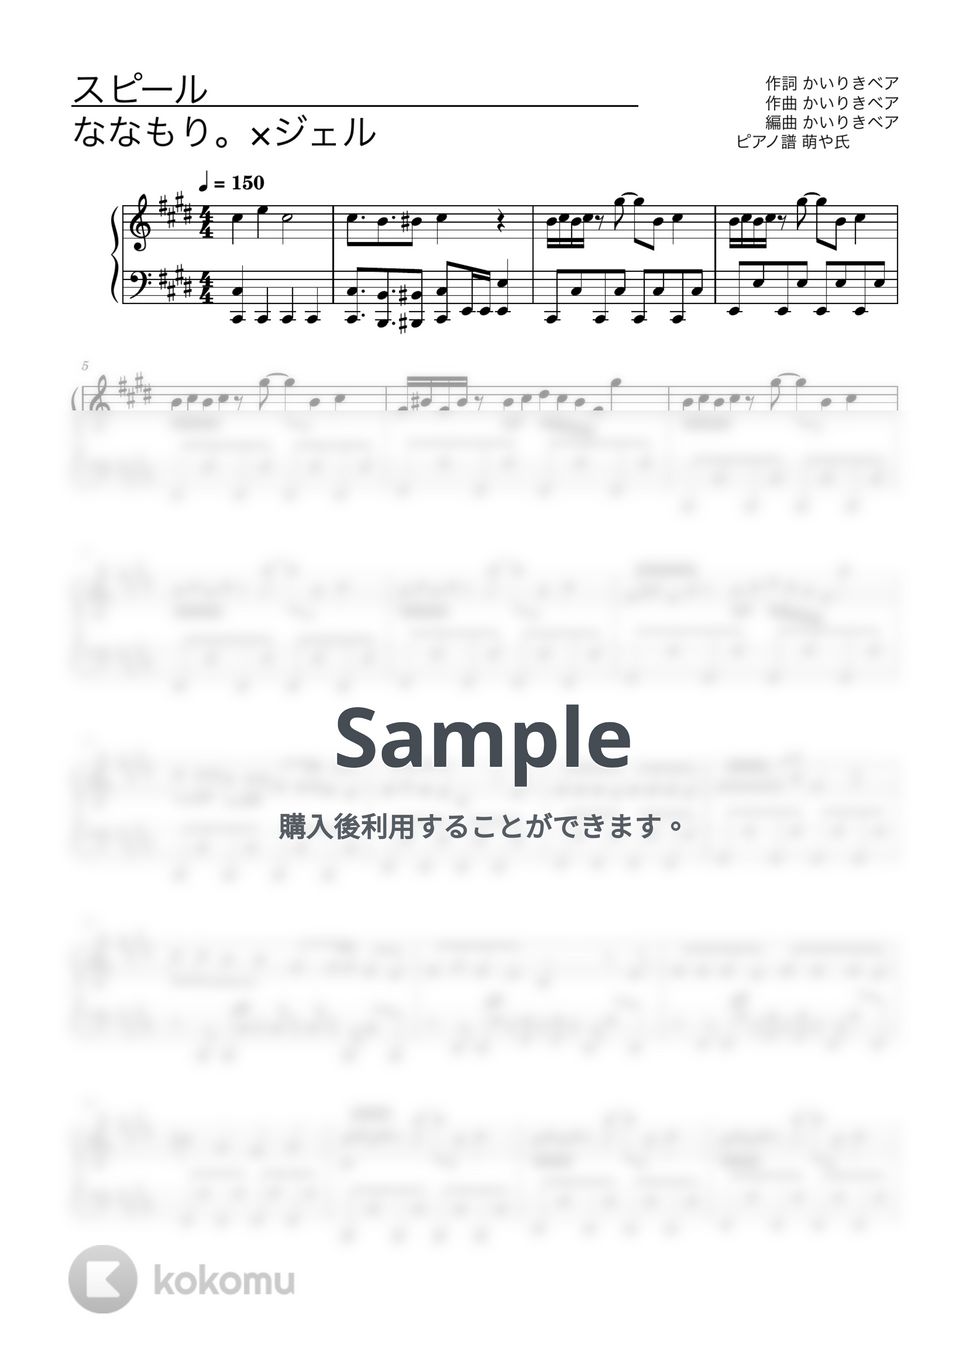 ななもり。×ジェル(すとぷり) - スピール (ピアノソロ譜) by 萌や氏